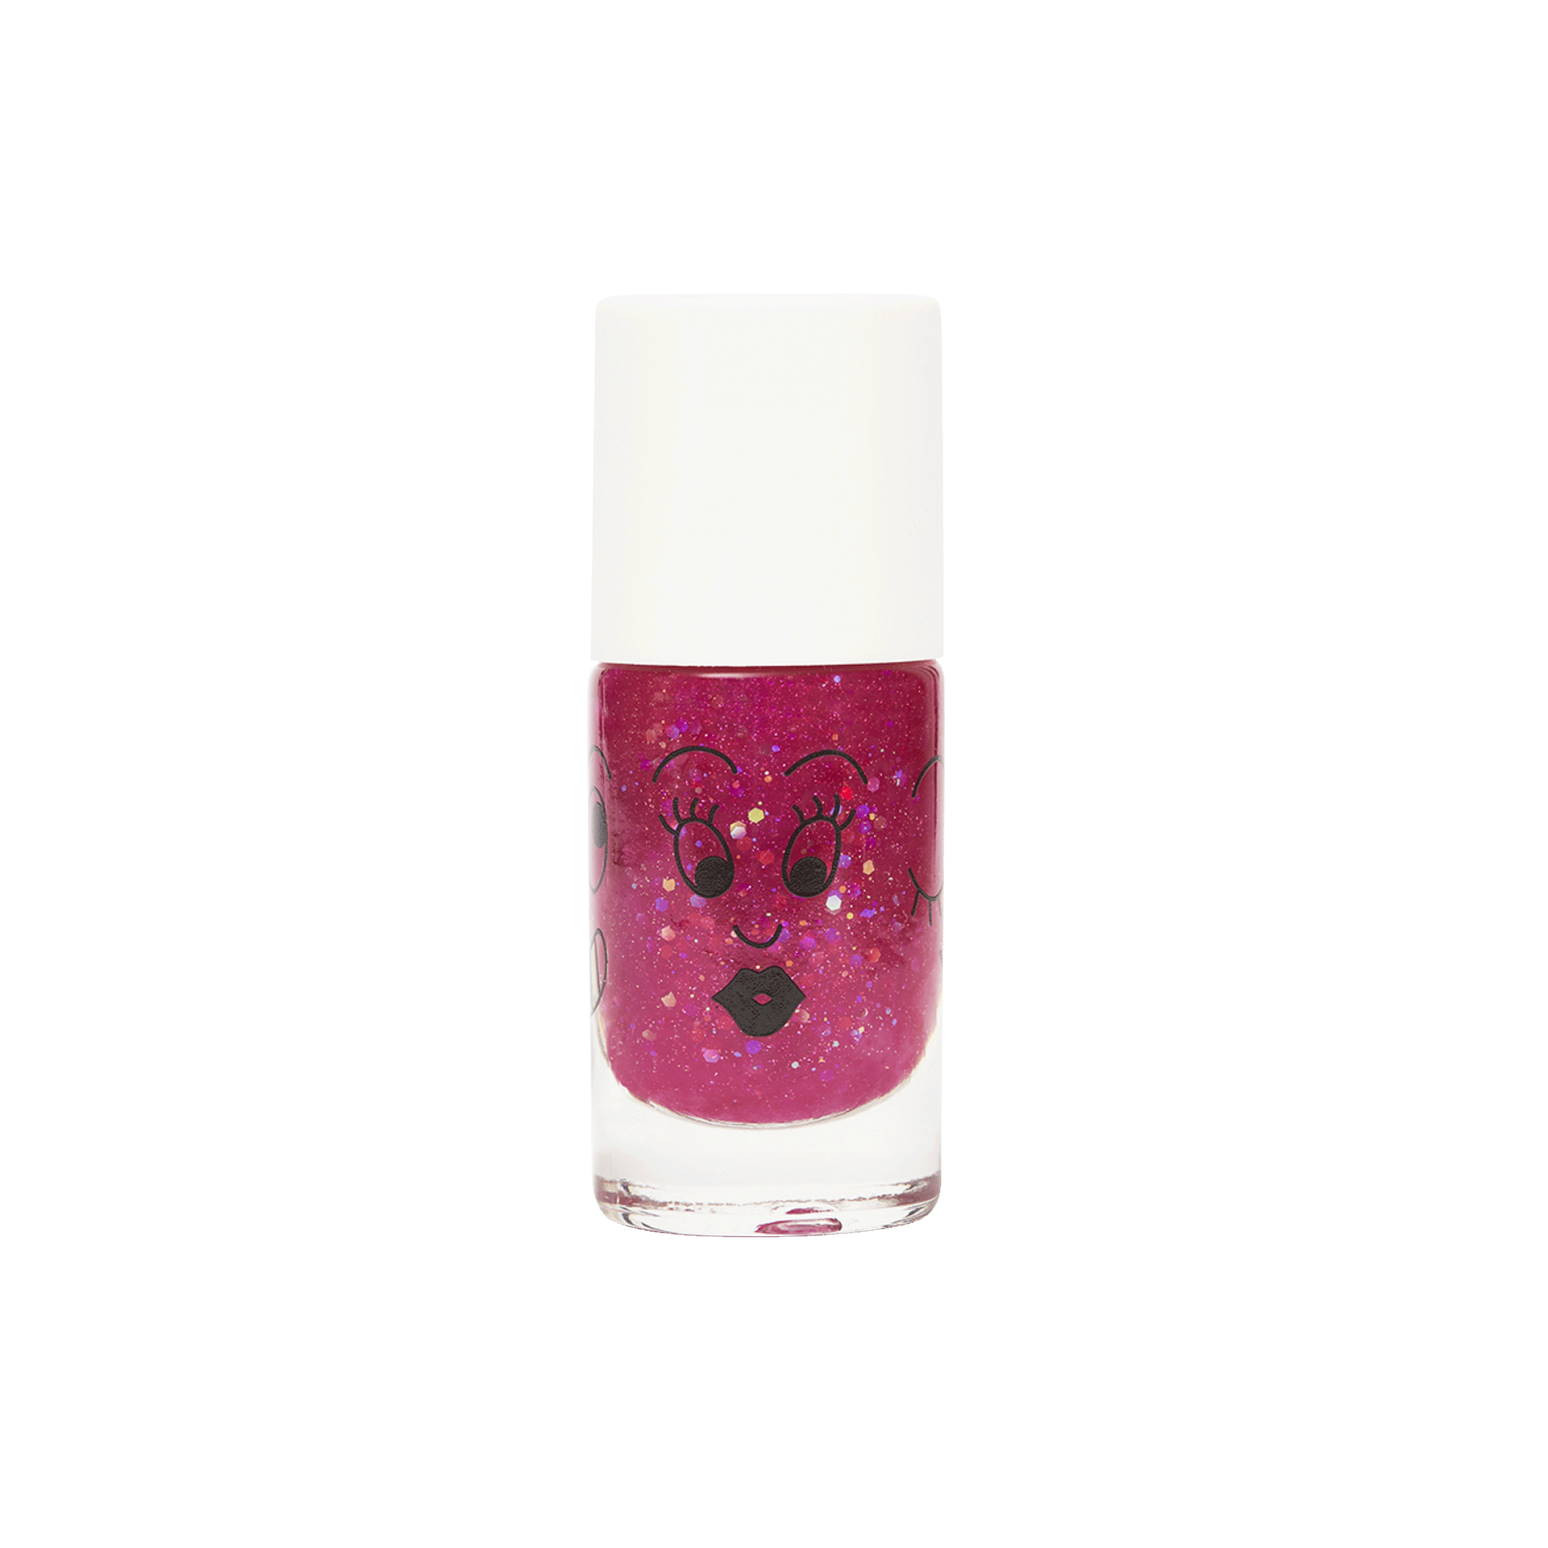 Sheepy - clear raspberry glitter